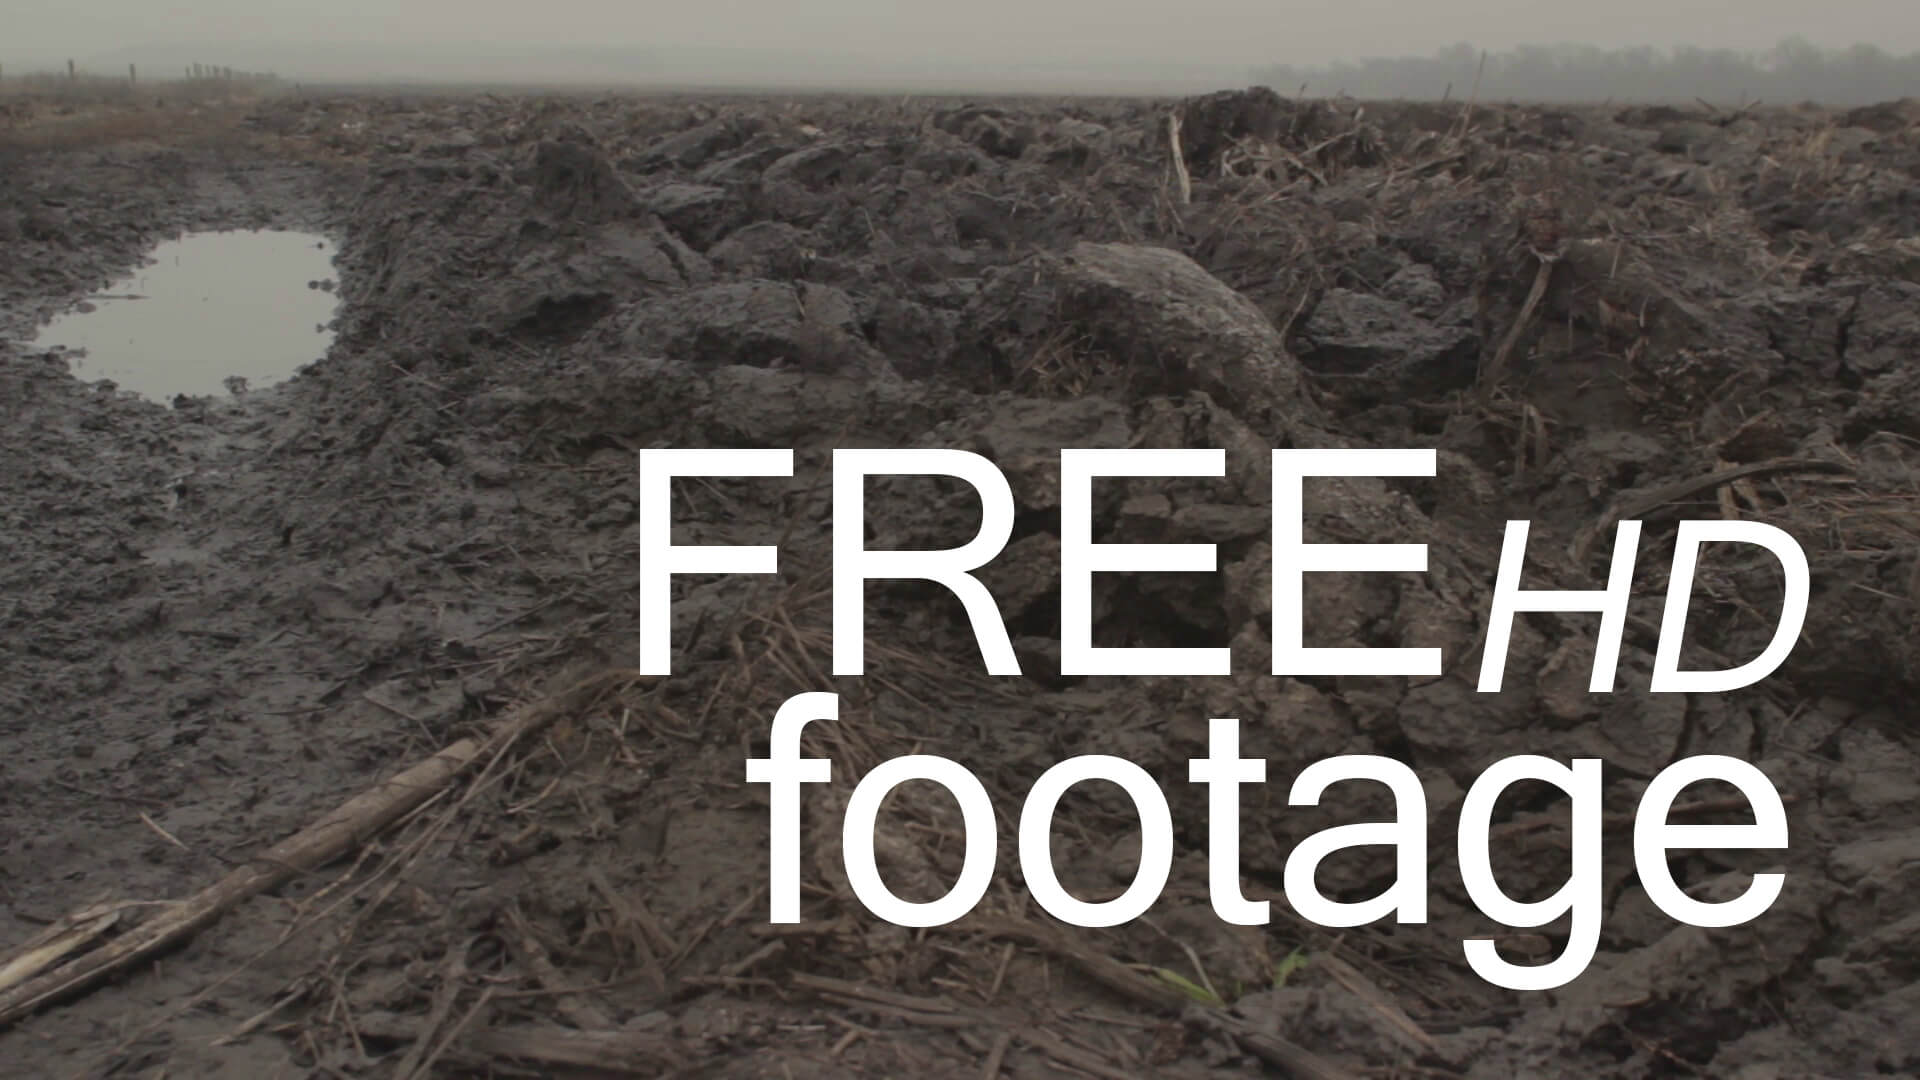 fog and field free hd footage d - Uncategorized